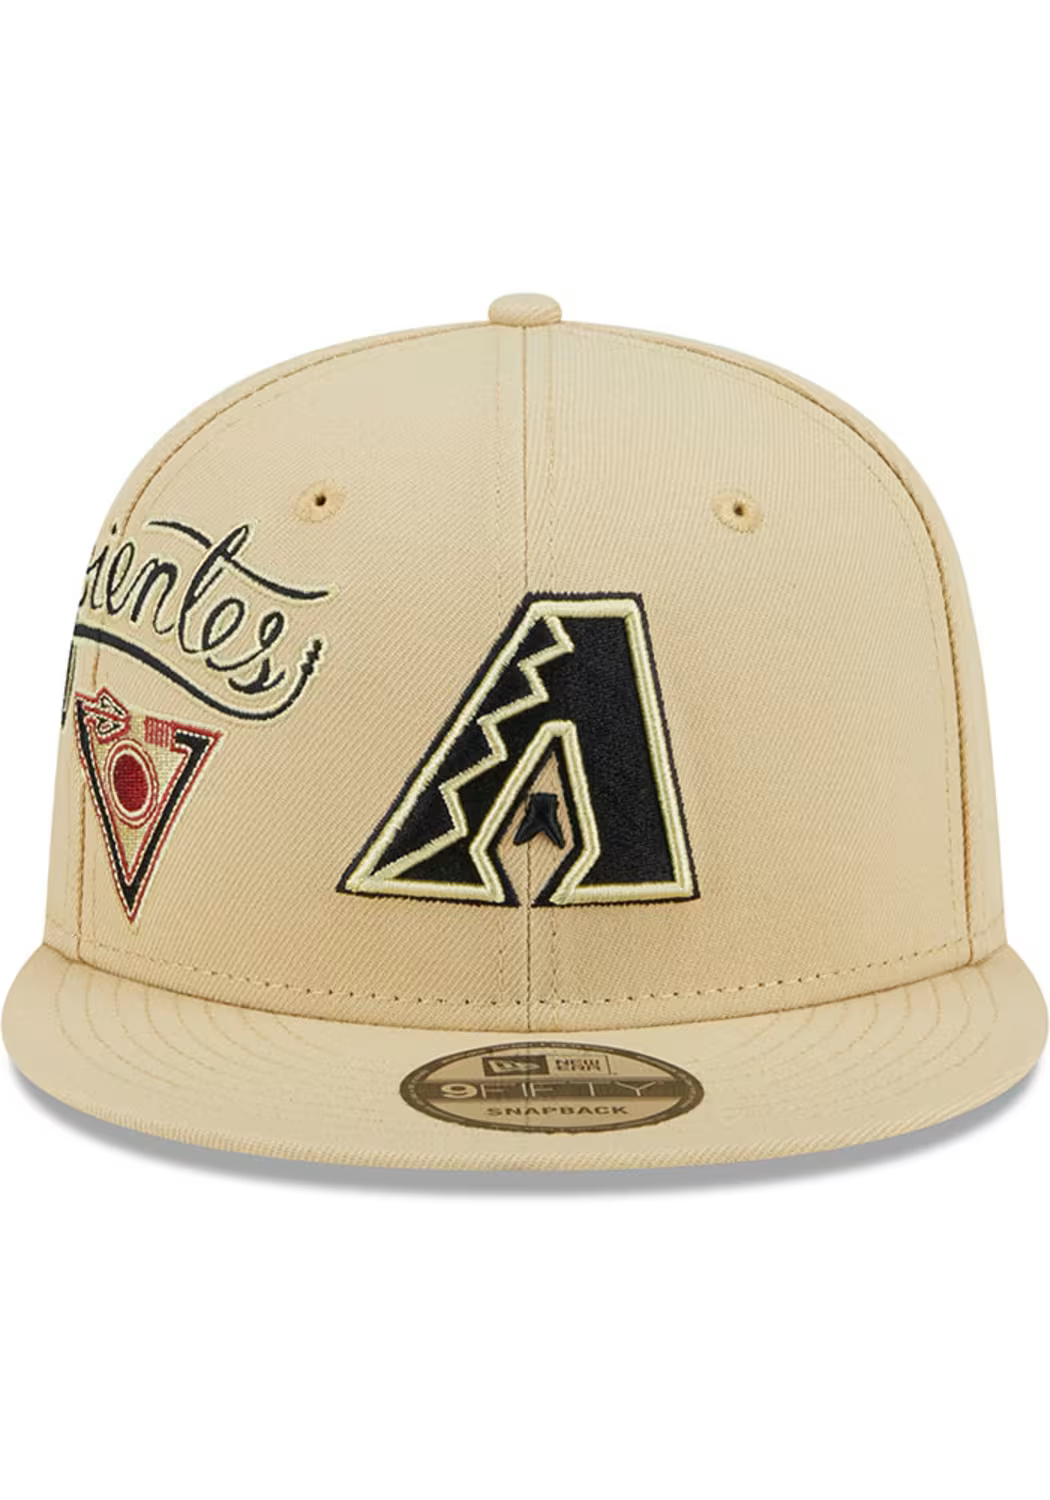 New Era Arizona Diamondbacks City Connect Icon 9FIFTY Snapback Hat